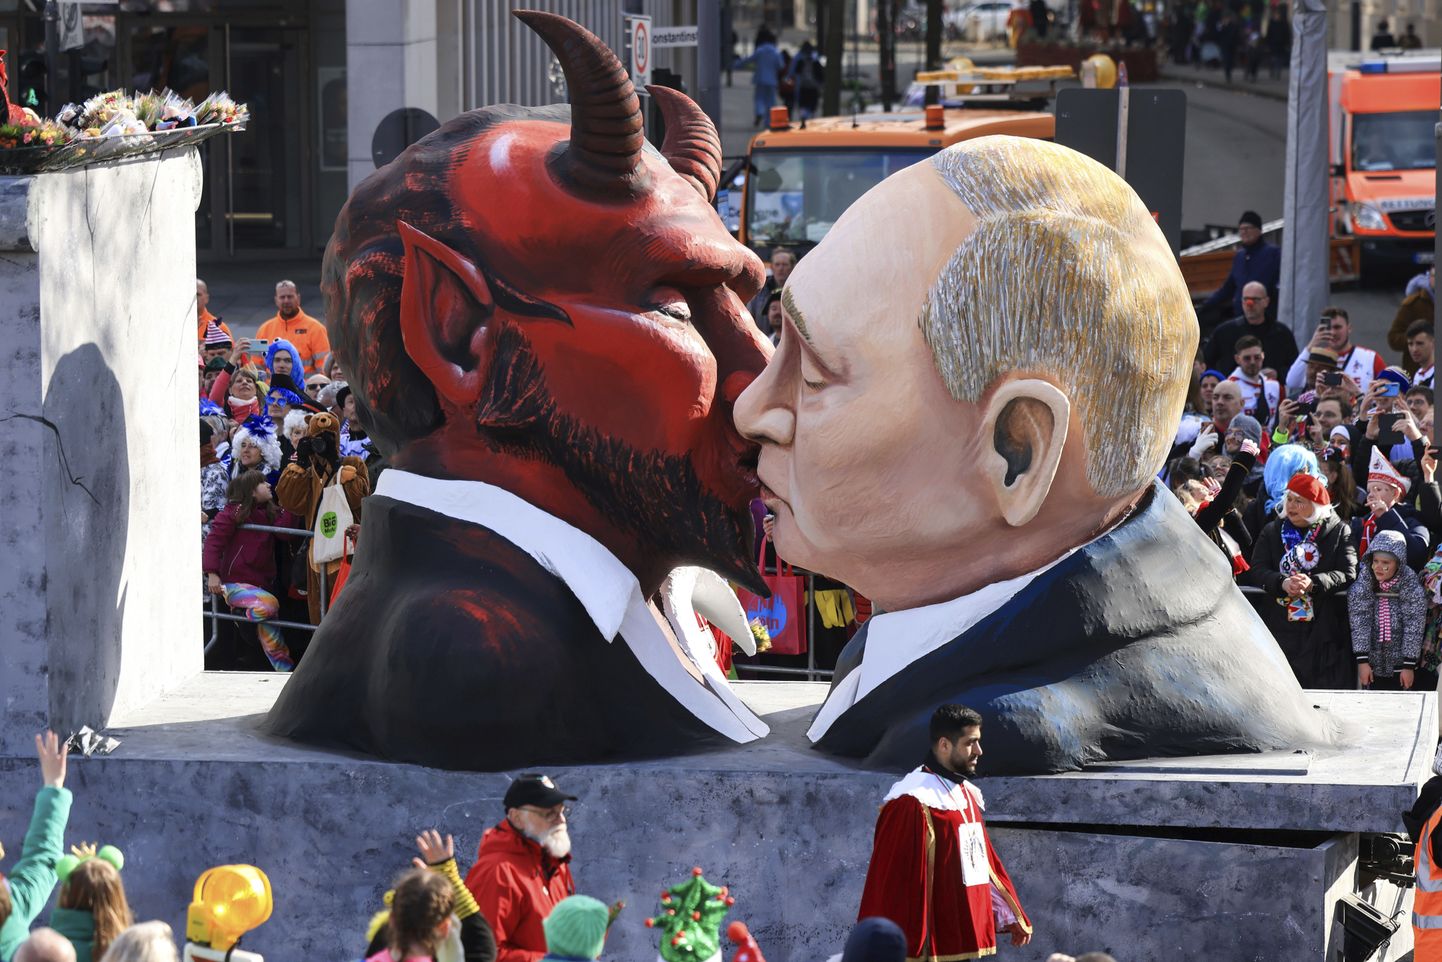 Pildil karneval Saksamaal, kus on kujutatud Venemaa presidenti Vladimir Putinit saatanat suudlemas.